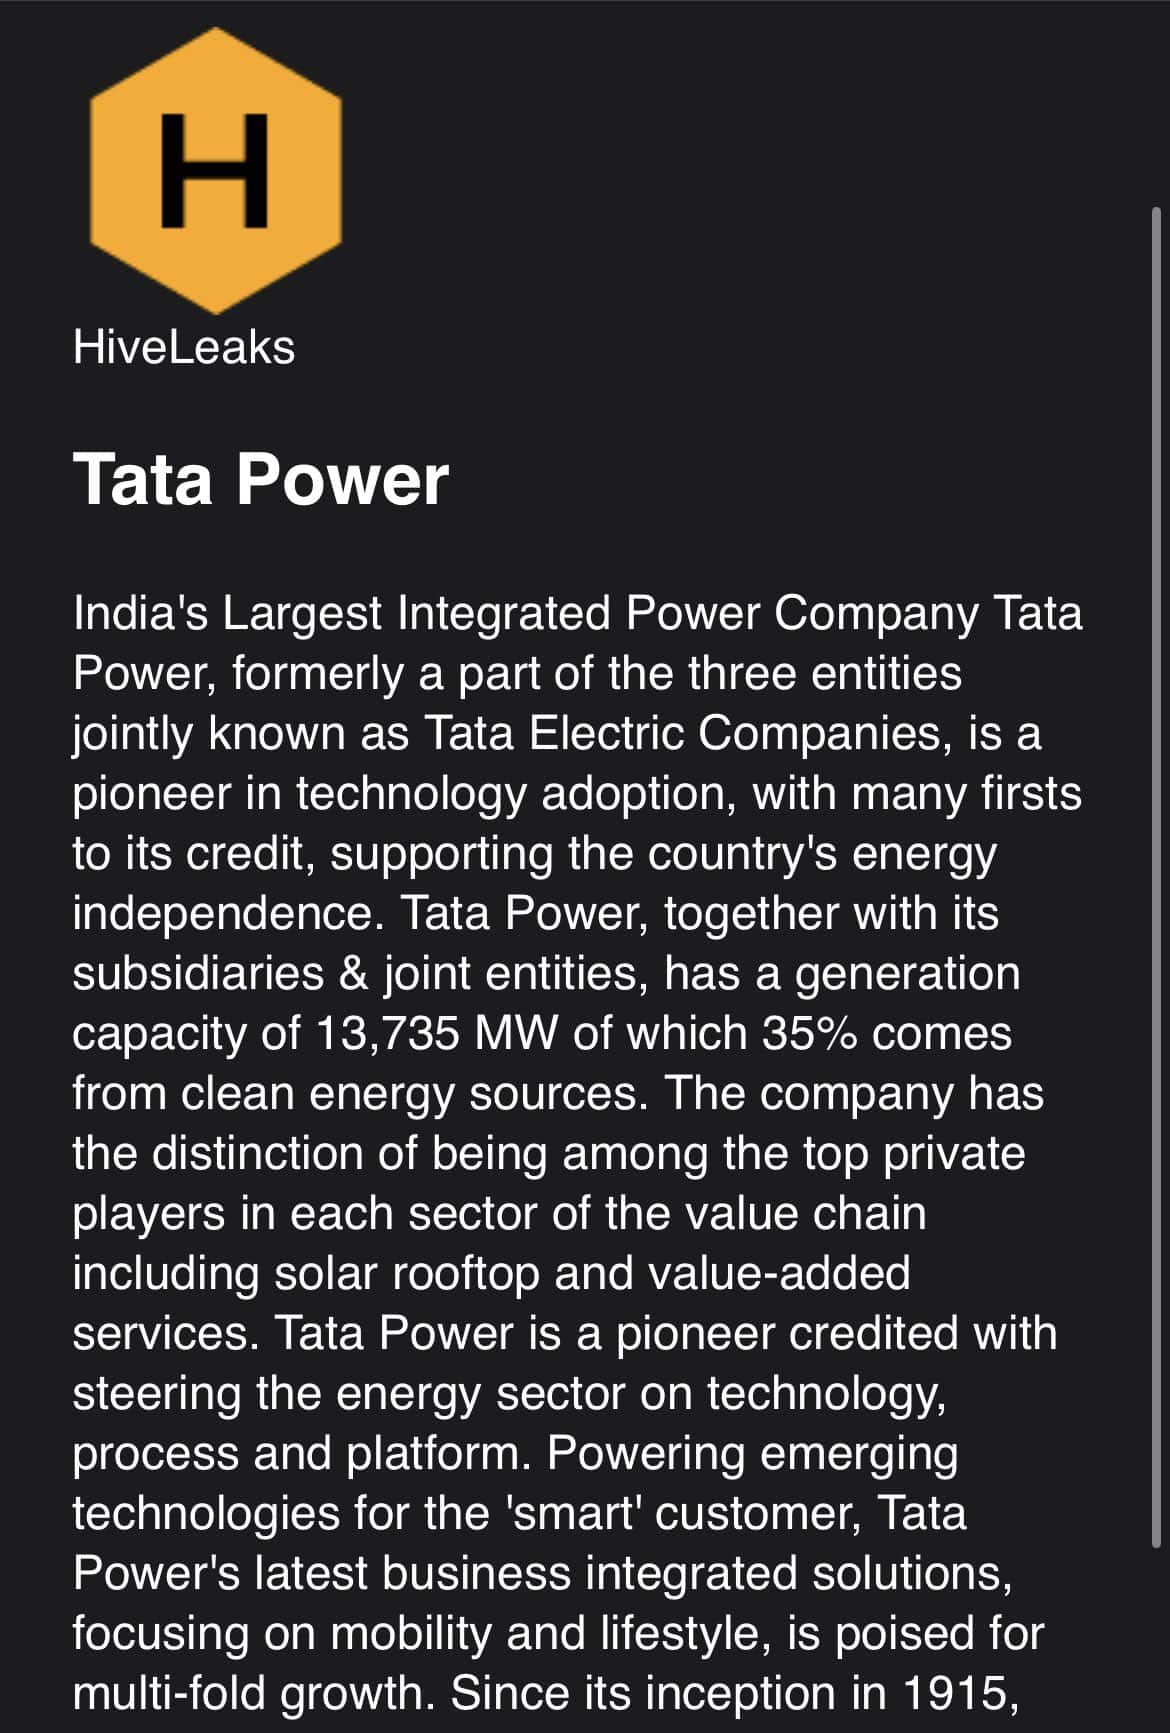 Hive fidye yazılımı, Tata Power'dan çalındığı iddia edilen verileri sızdırıyor